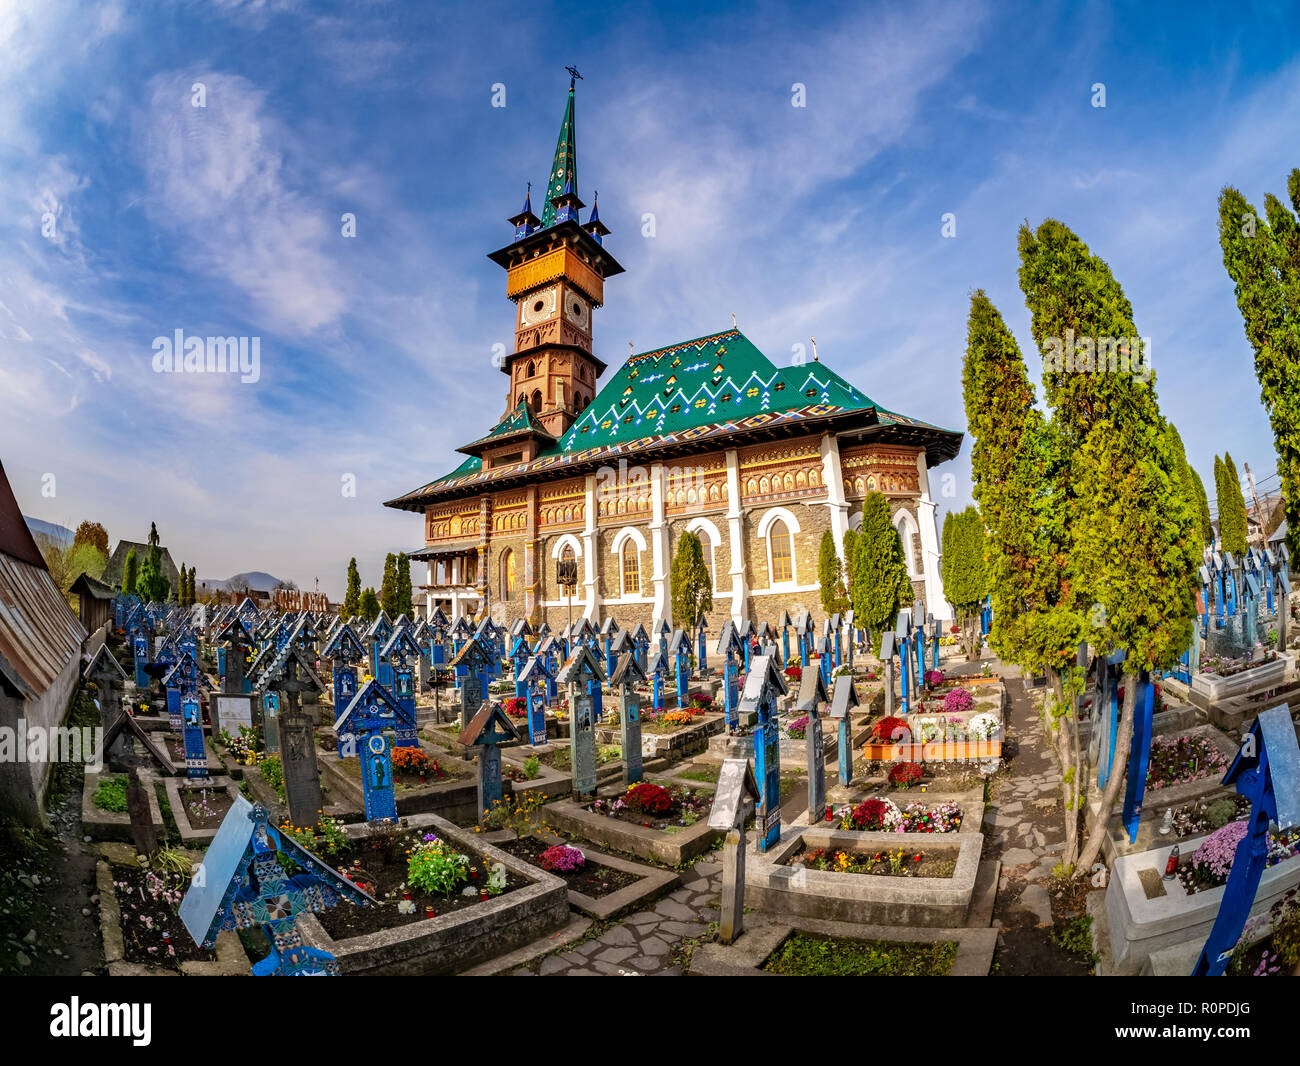 Sapanta, Roumanie - 2 novembre, 2018 : le cimetière dans le célèbre Cimetière Joyeux (joie) dans la région de Maramures, Roumanie. Banque D'Images